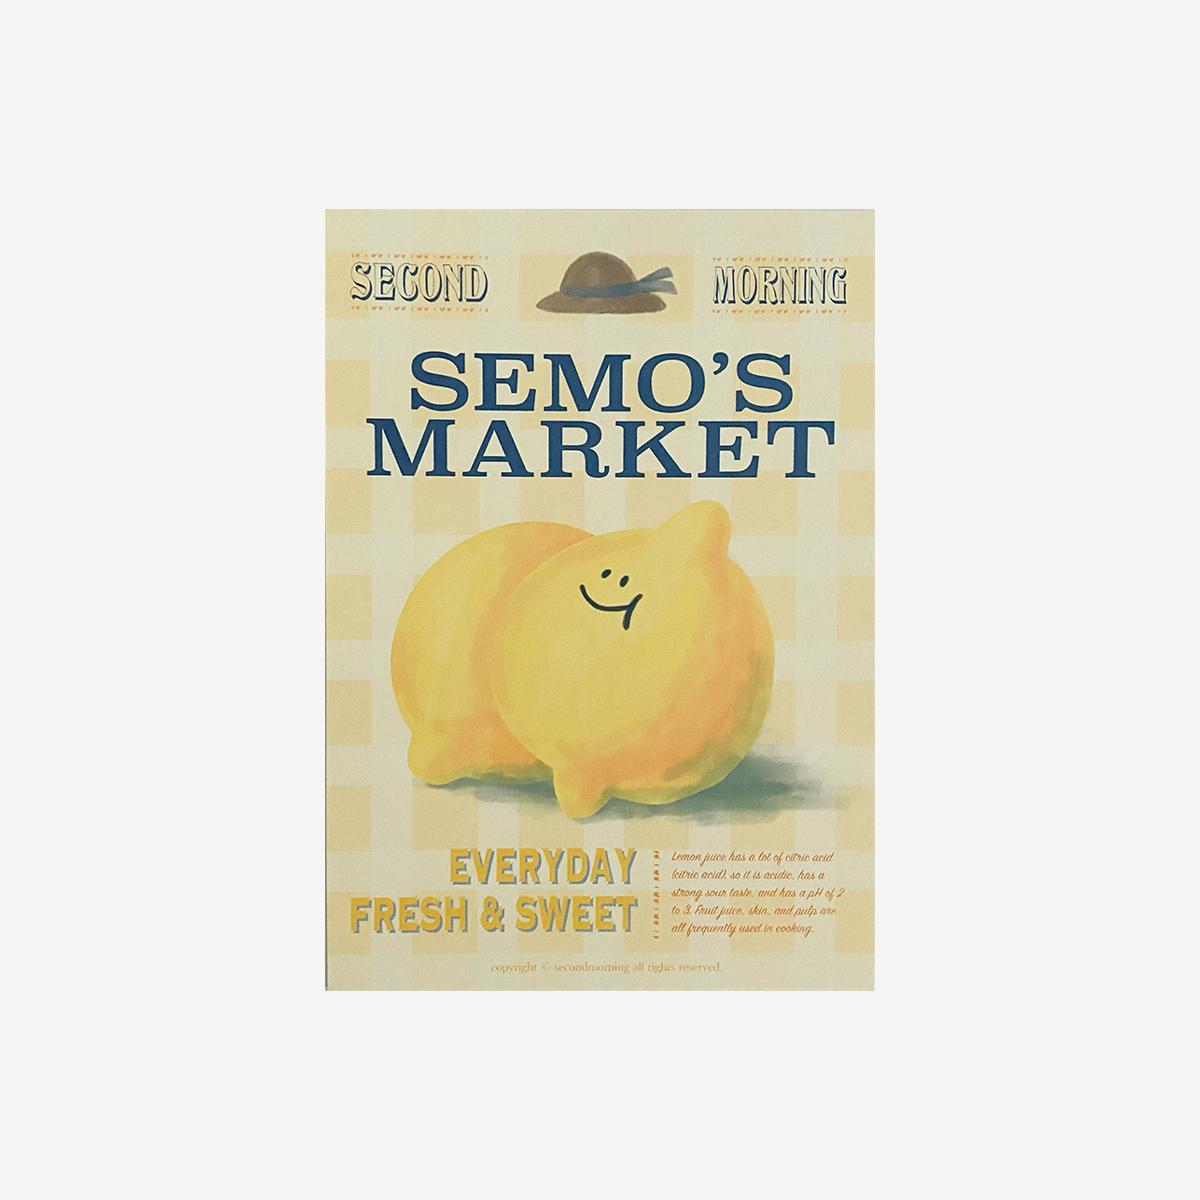 Semo Market迷你裝飾海報